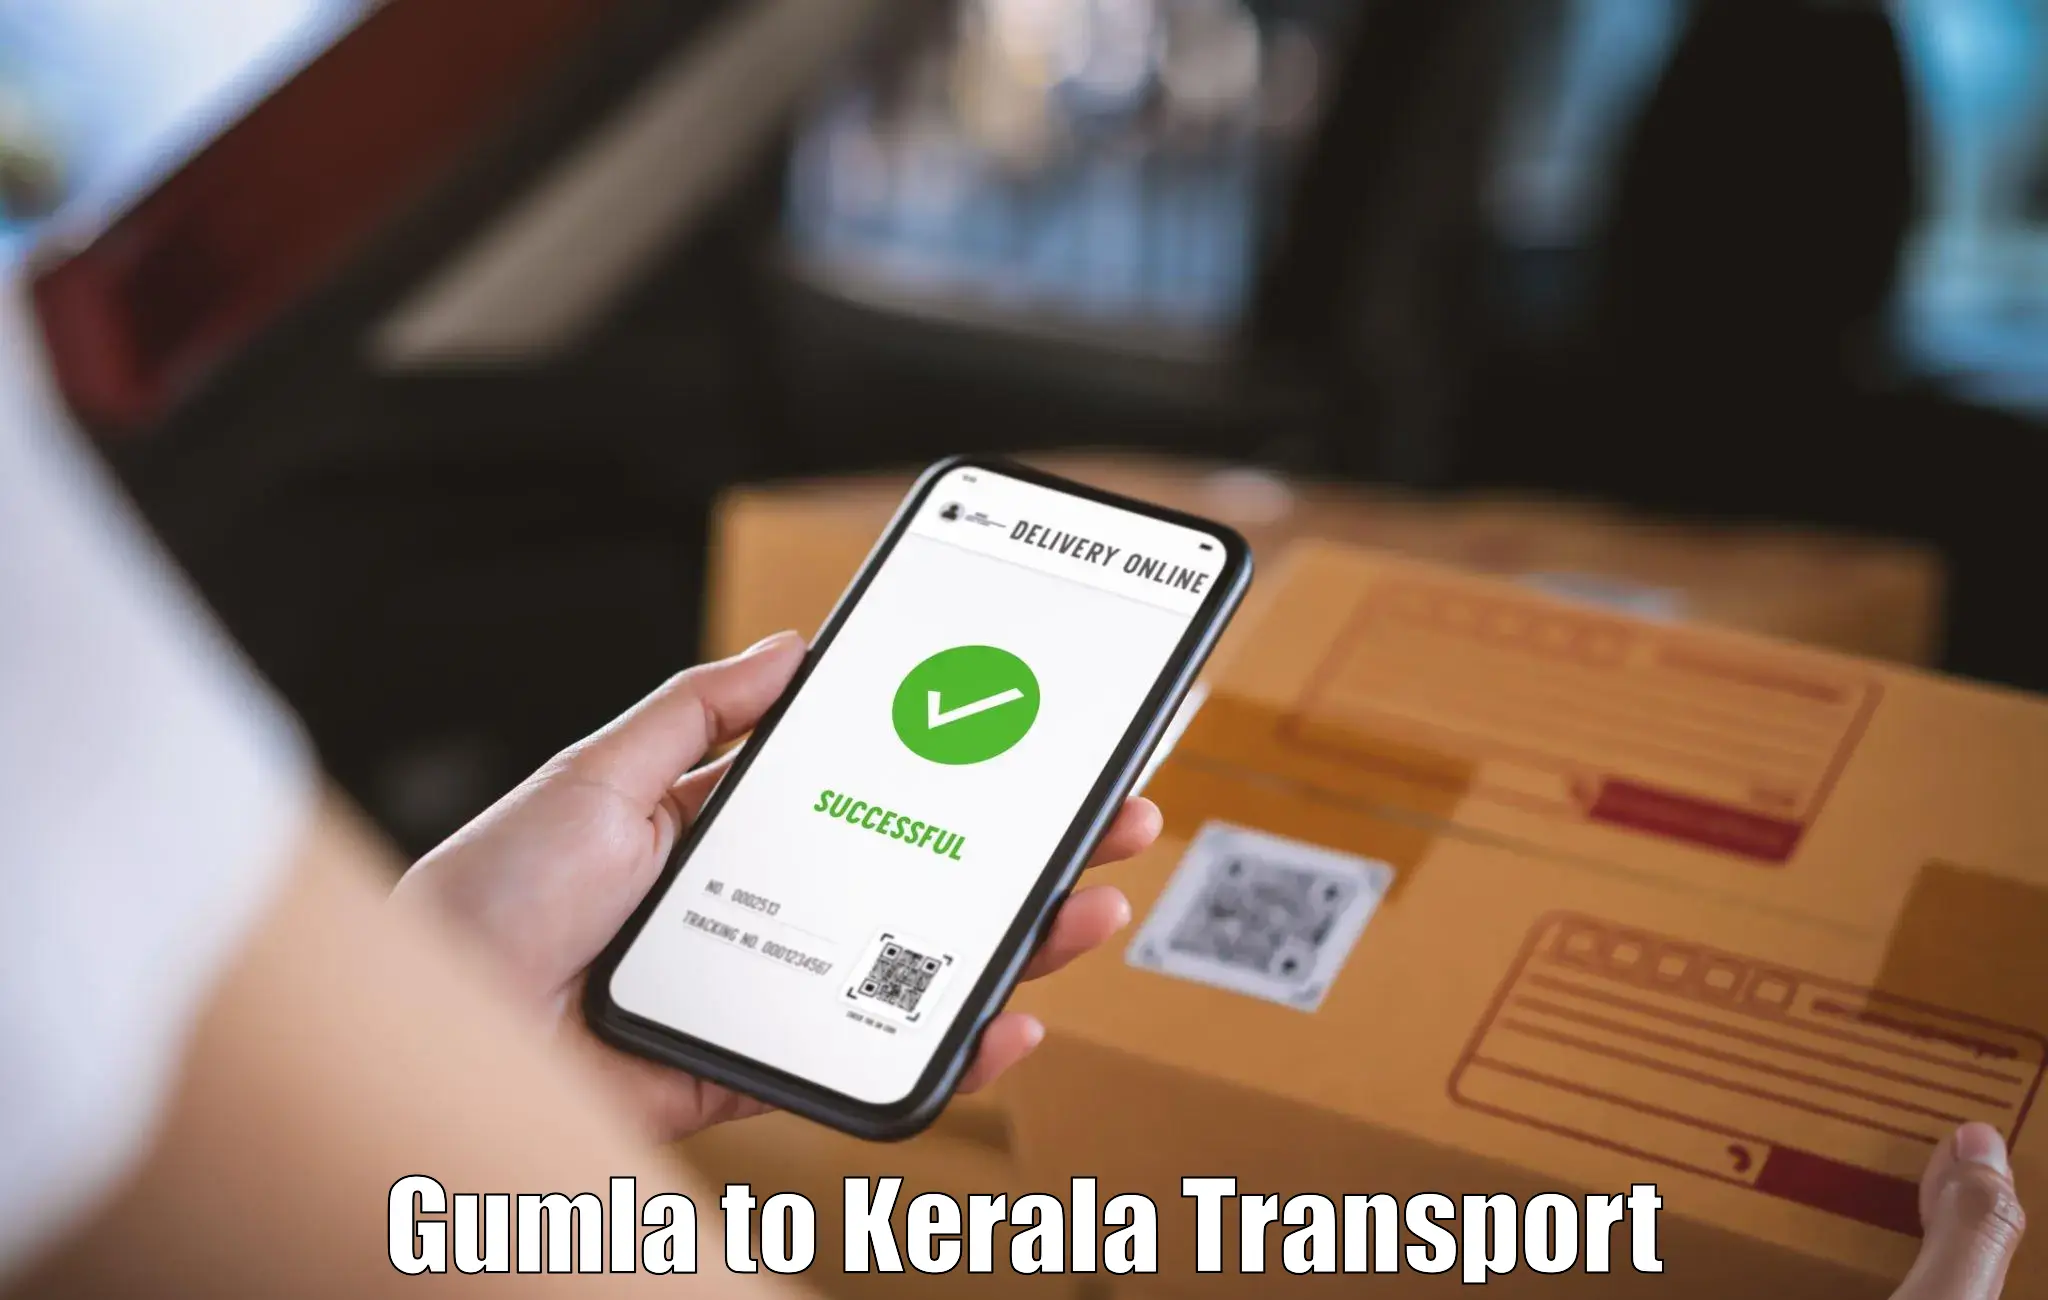 Nearest transport service Gumla to Nedumkandam